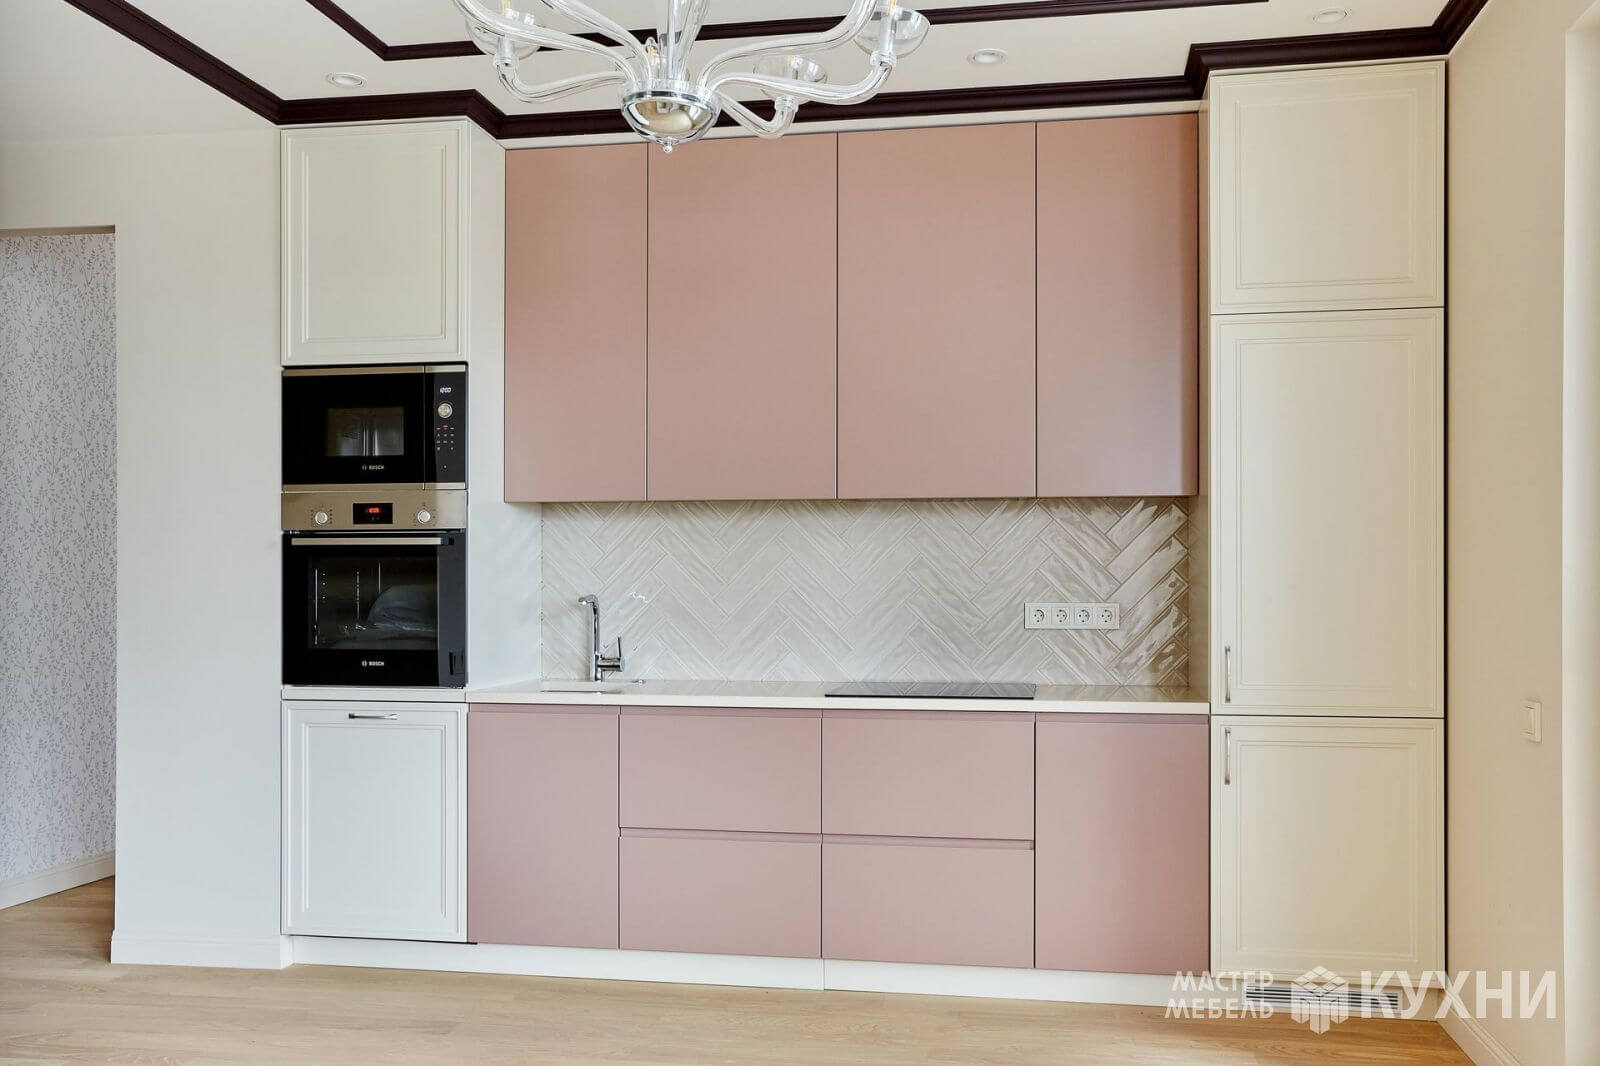 кухня арт из крашеного мдф - цвет: розовый бежевый - 1